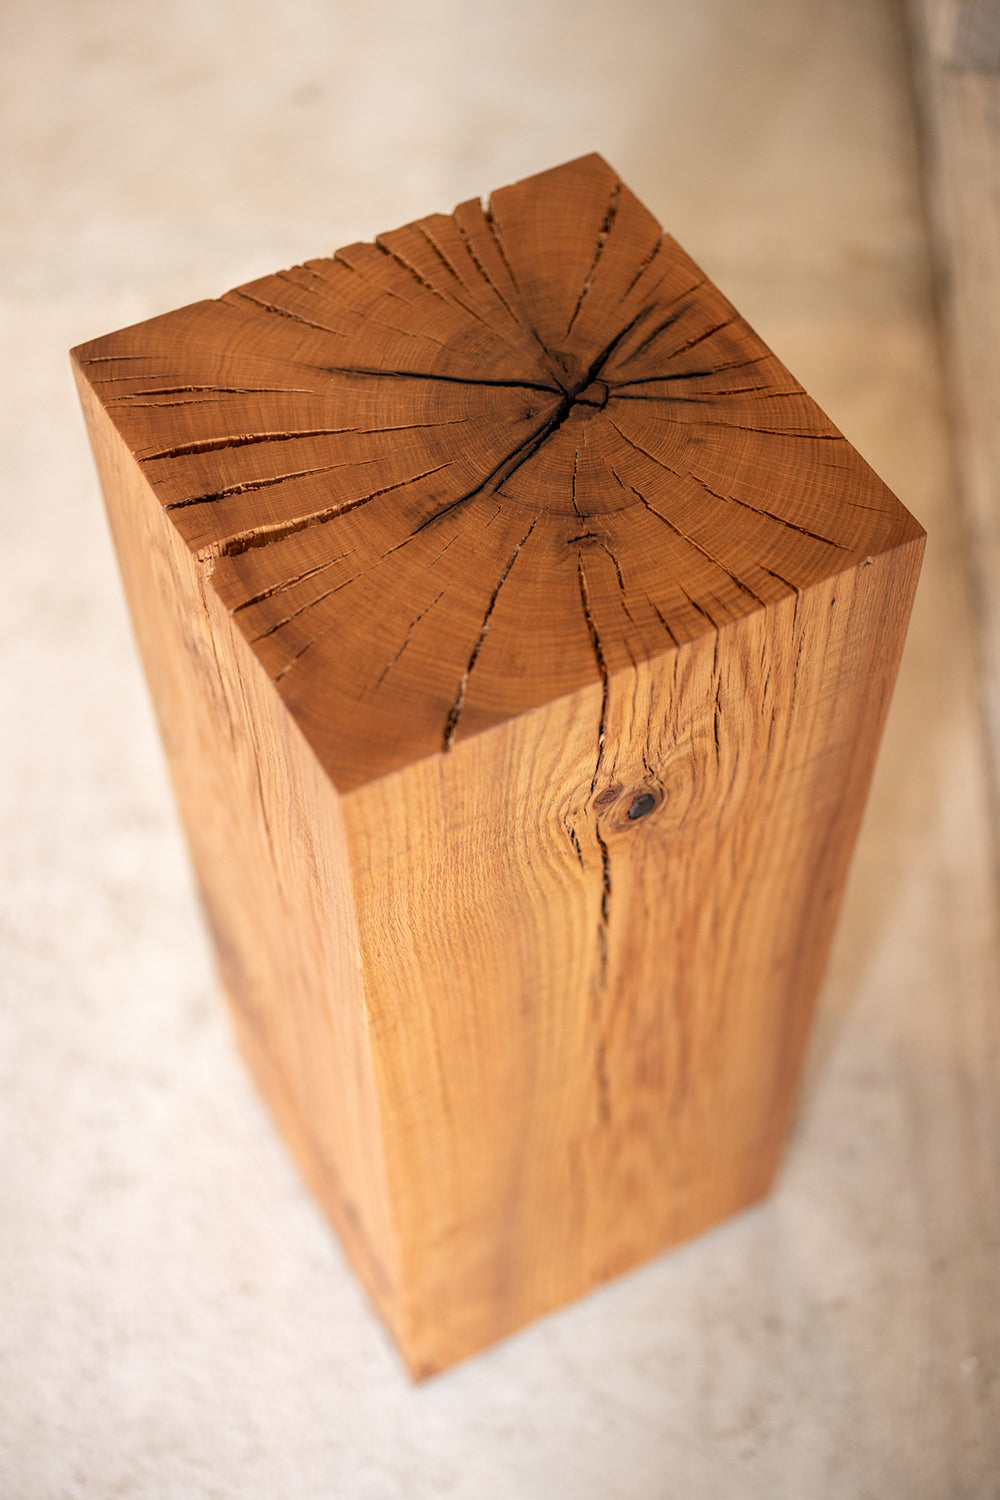 Le Boit | Solid Wood Cube Pedestal Red Oak  36" H Art Sculpture End Grain